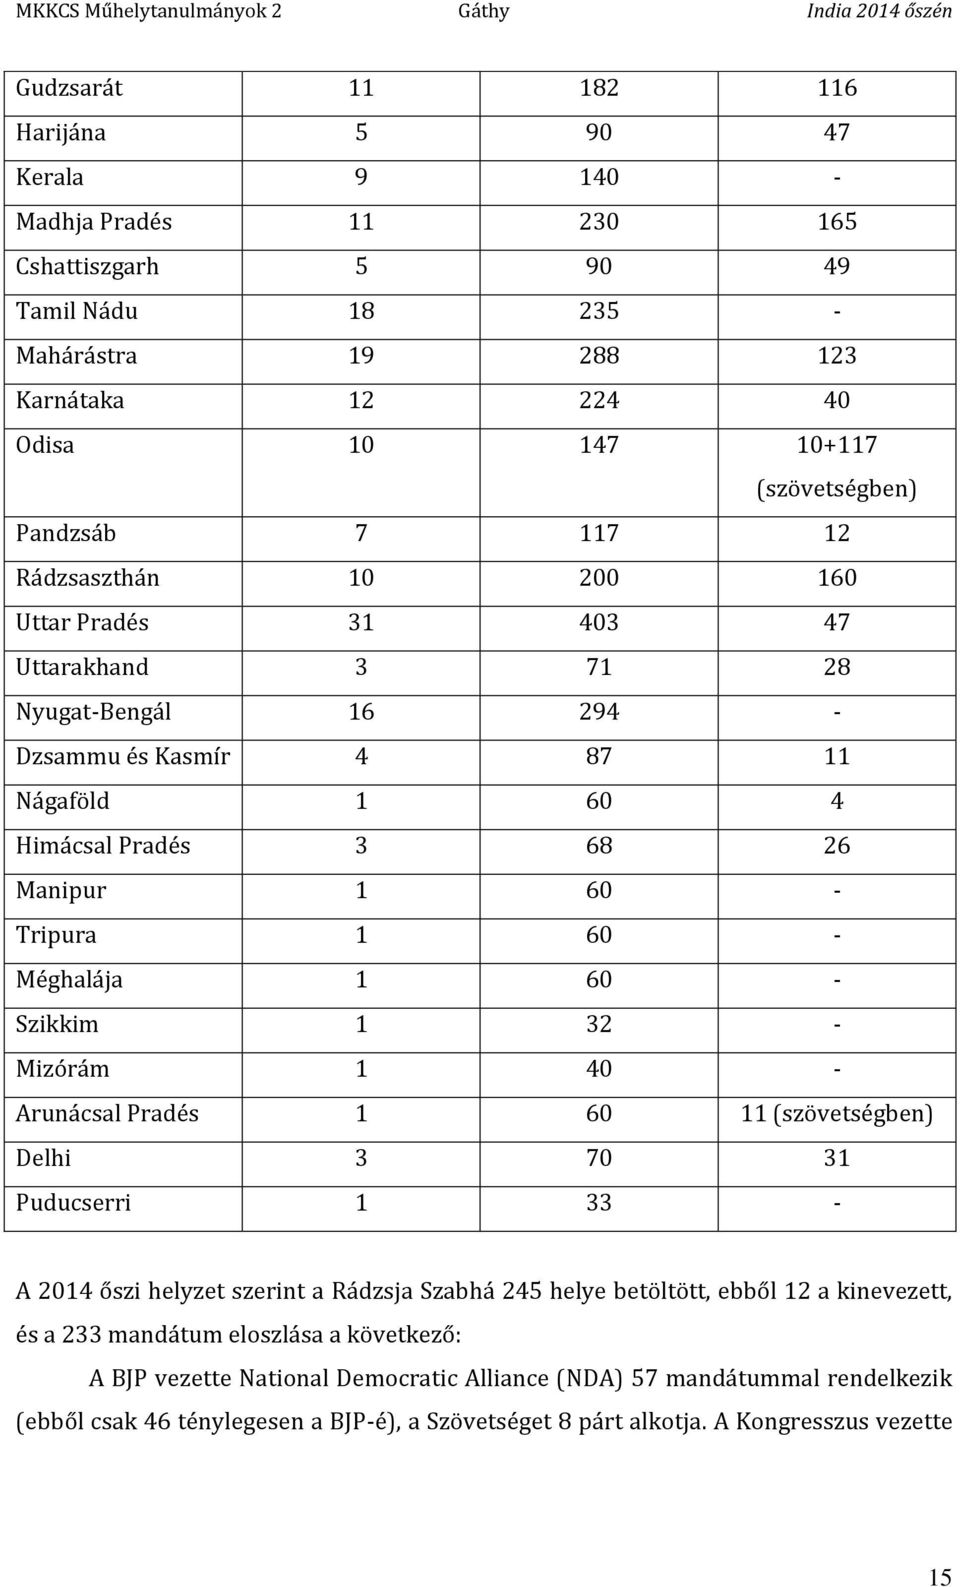 60 - Méghalája 1 60 - Szikkim 1 32 - Mizórám 1 40 - Arunácsal Pradés 1 60 11 (szövetségben) Delhi 3 70 31 Puducserri 1 33 - A 2014 őszi helyzet szerint a Rádzsja Szabhá 245 helye betöltött, ebből 12